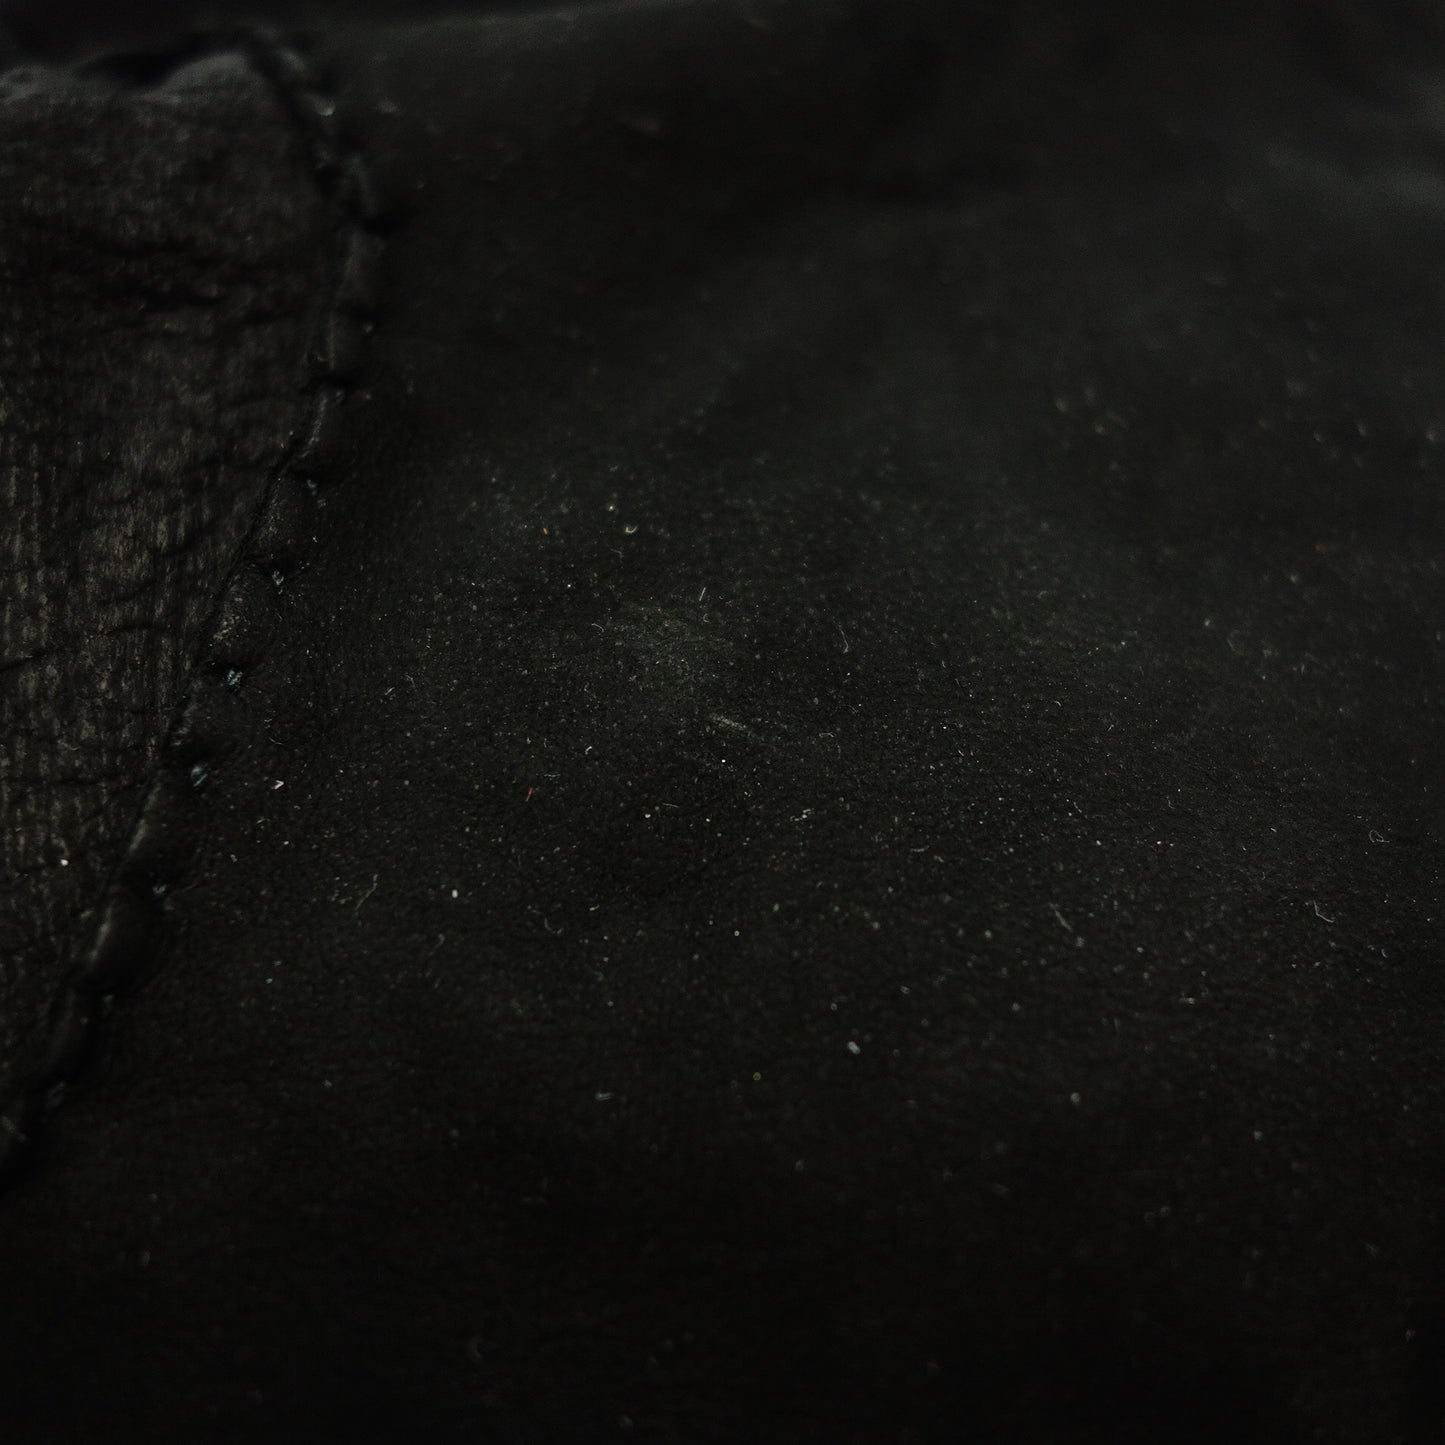 イヴサンローラン スエード レザー グローブ 手袋 ブラック 9 YVES SAINT LAURENT【AFI20】【中古】